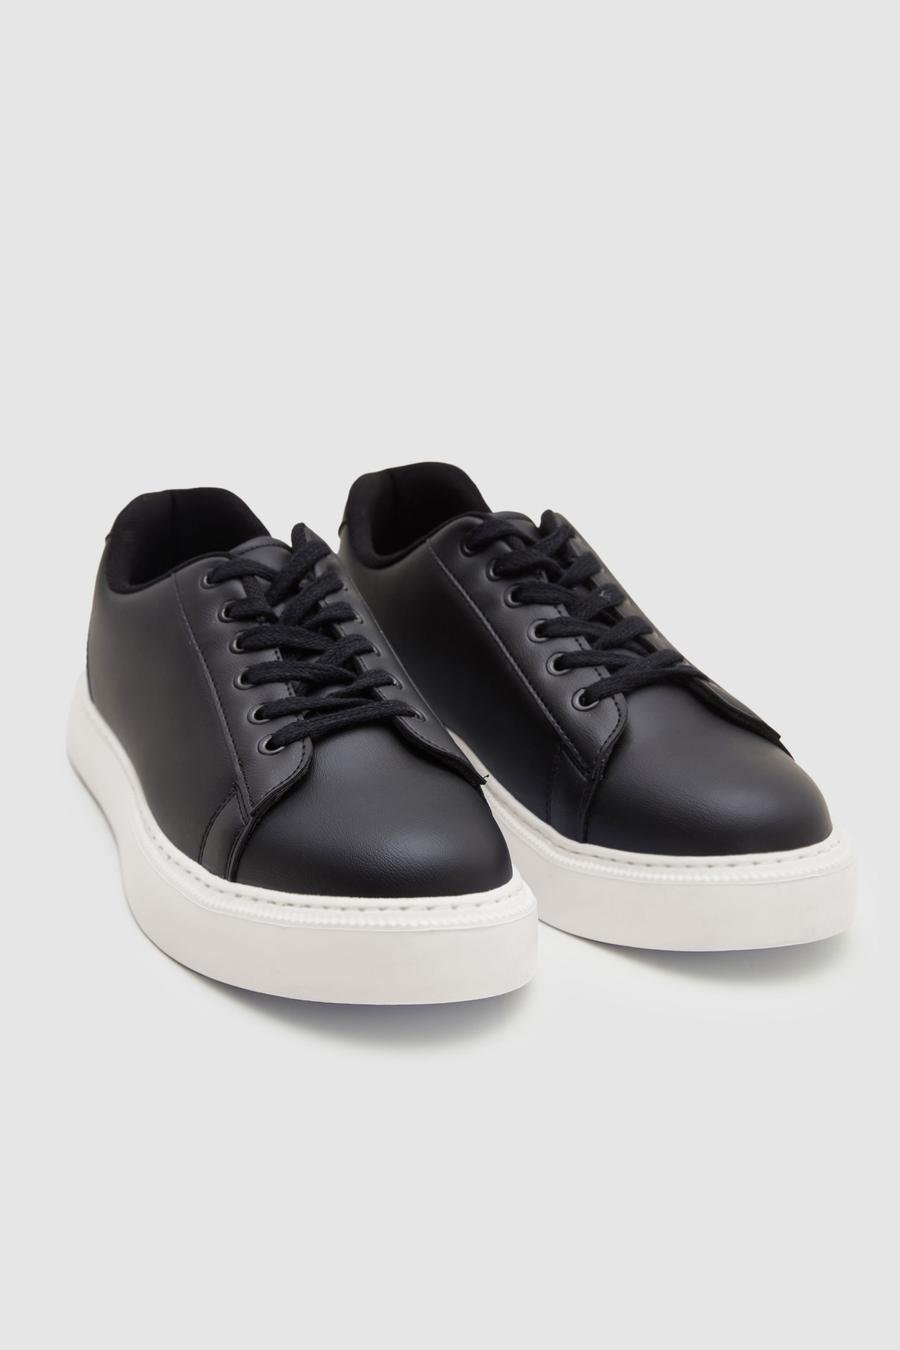 Twn Siyah Kalın Beyaz Tabanlı Sneaker Ayakkabi - 8683578010255 | D'S Damat